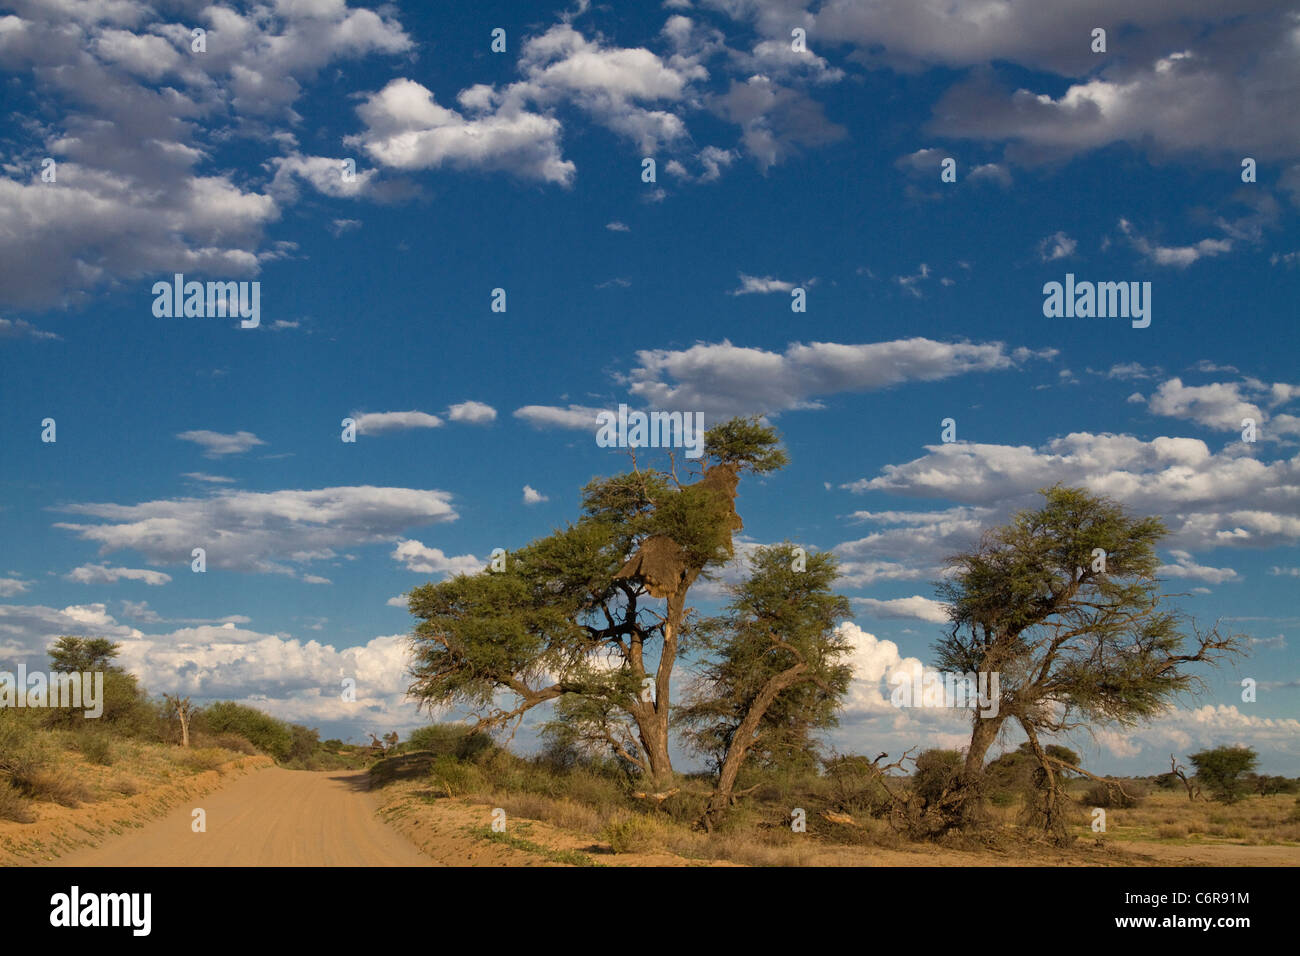 La savane du Kalahari avec un chemin de terre, Camelthorn arbres (Acacia erioloba) et des cumulus épars Banque D'Images